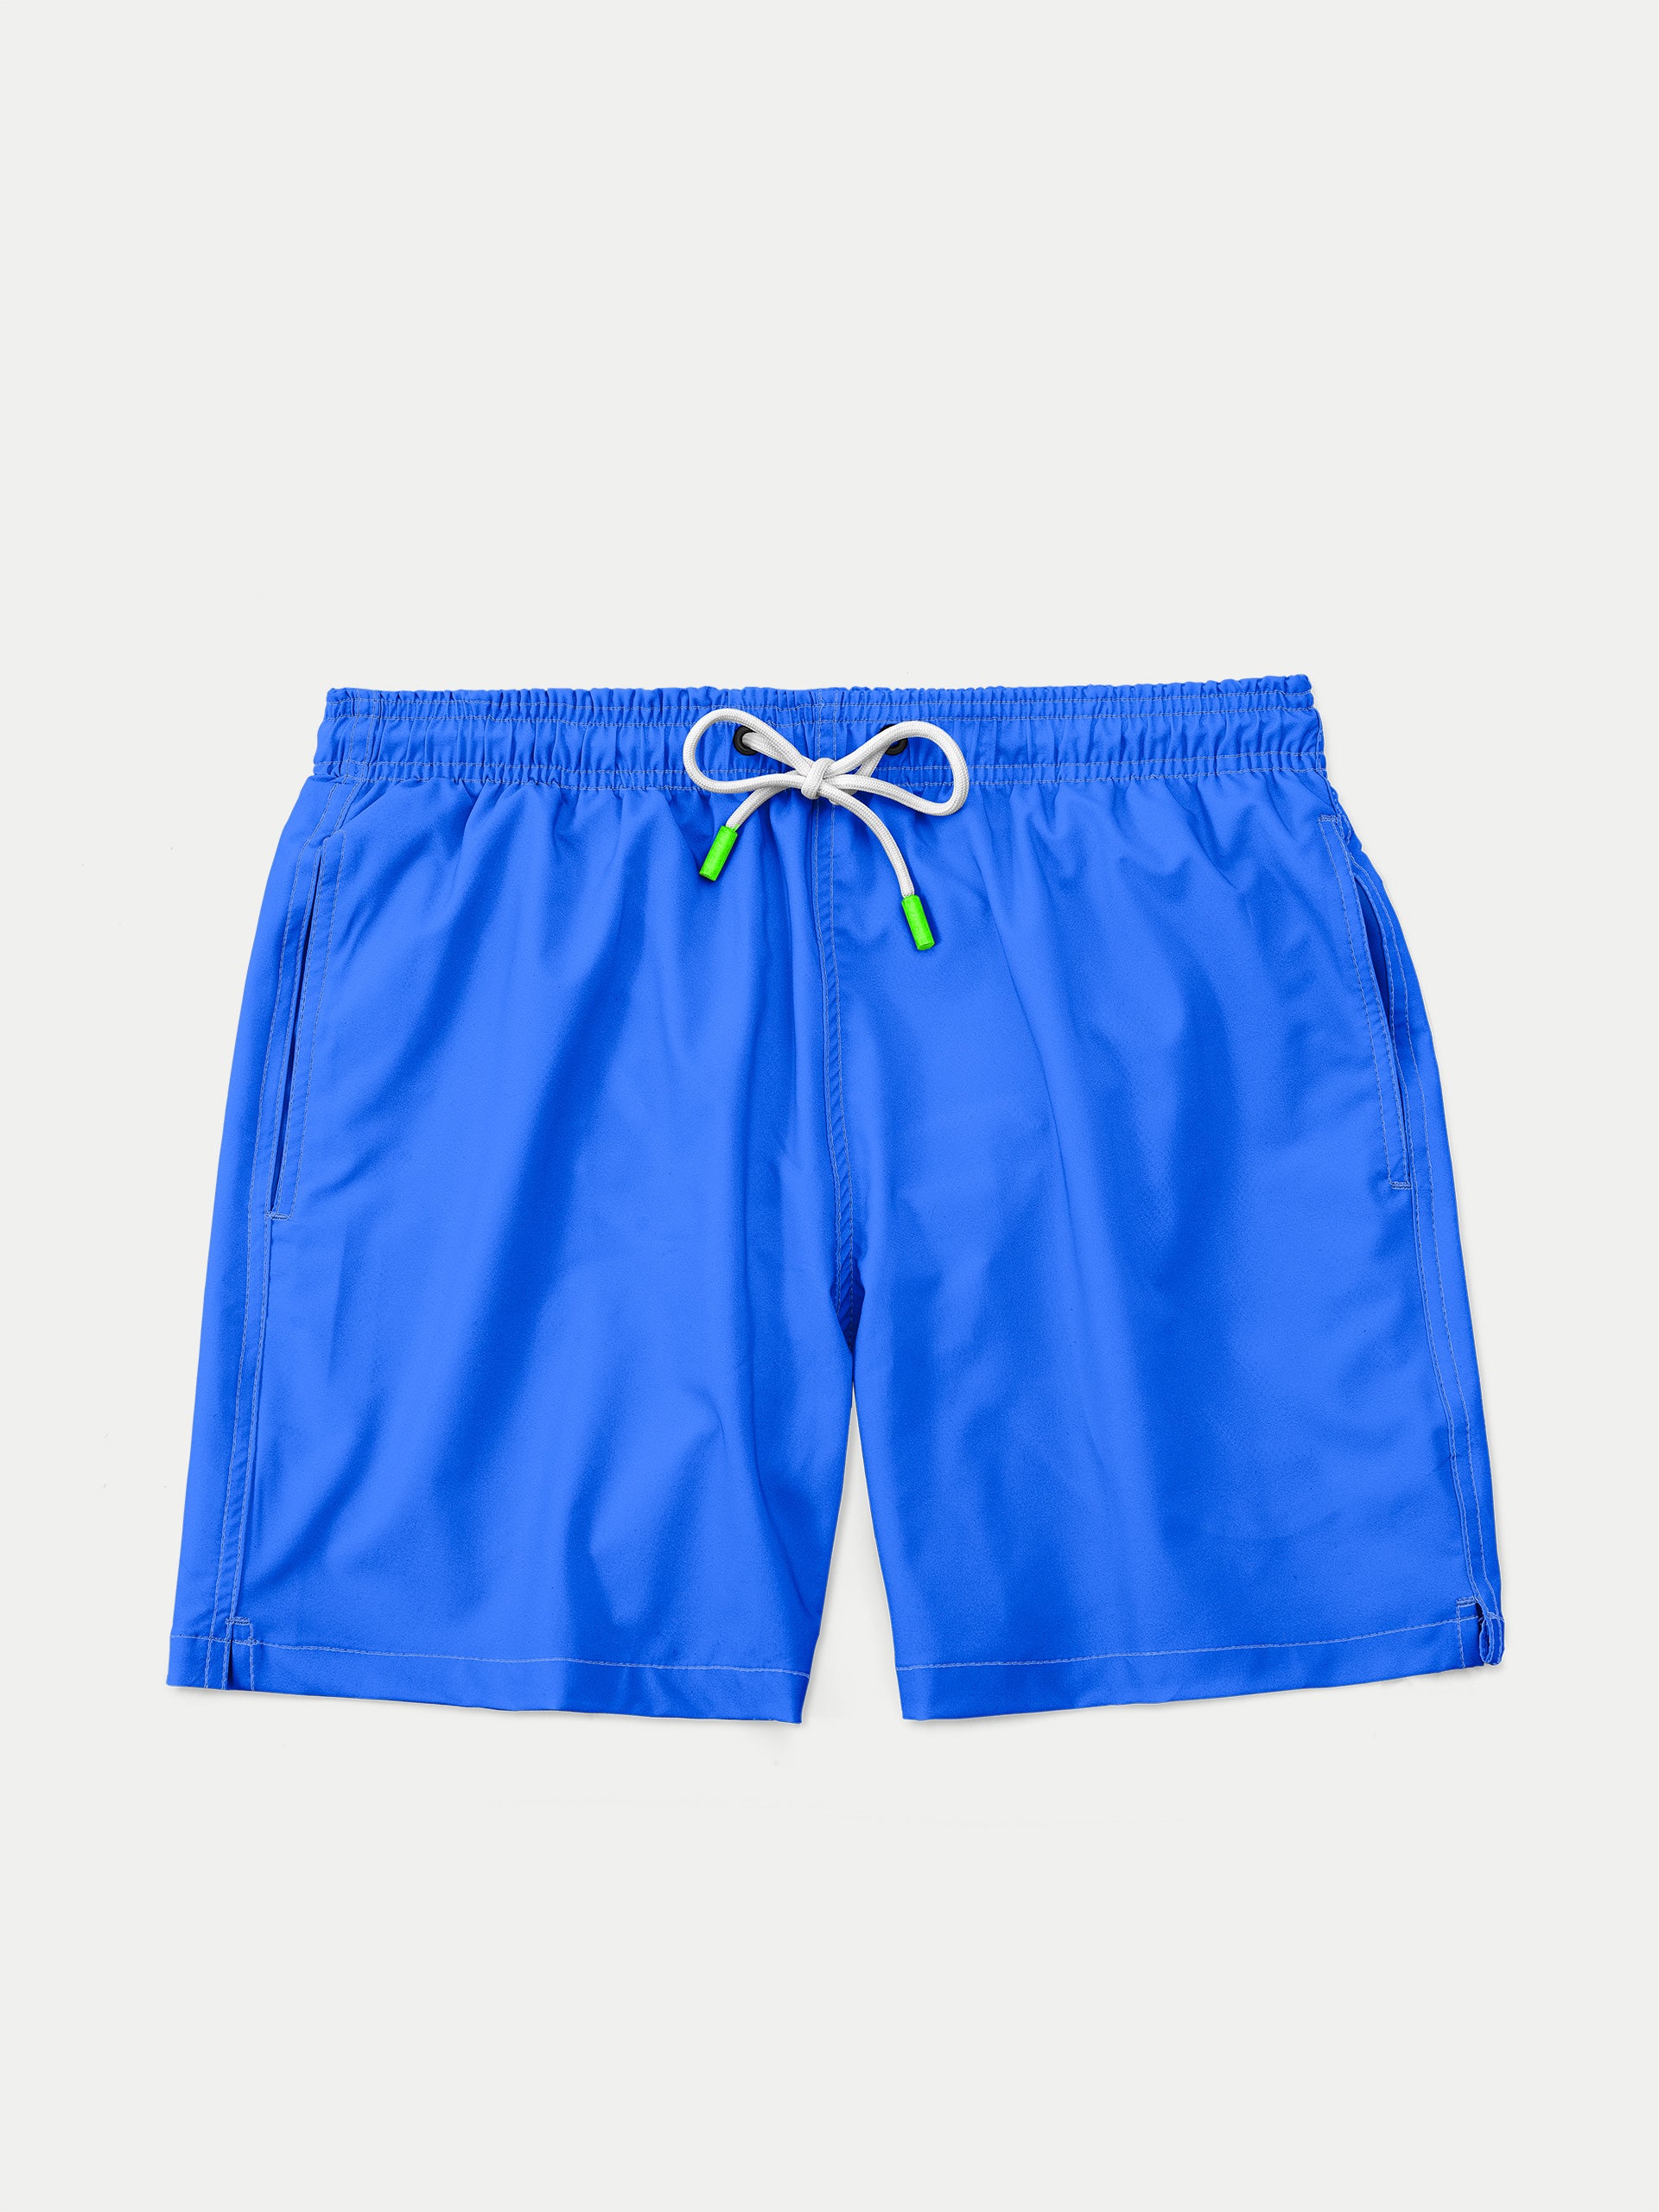 ‘Basic Electric Blue’ Swim Trunks for Men by 98 Coast Av.